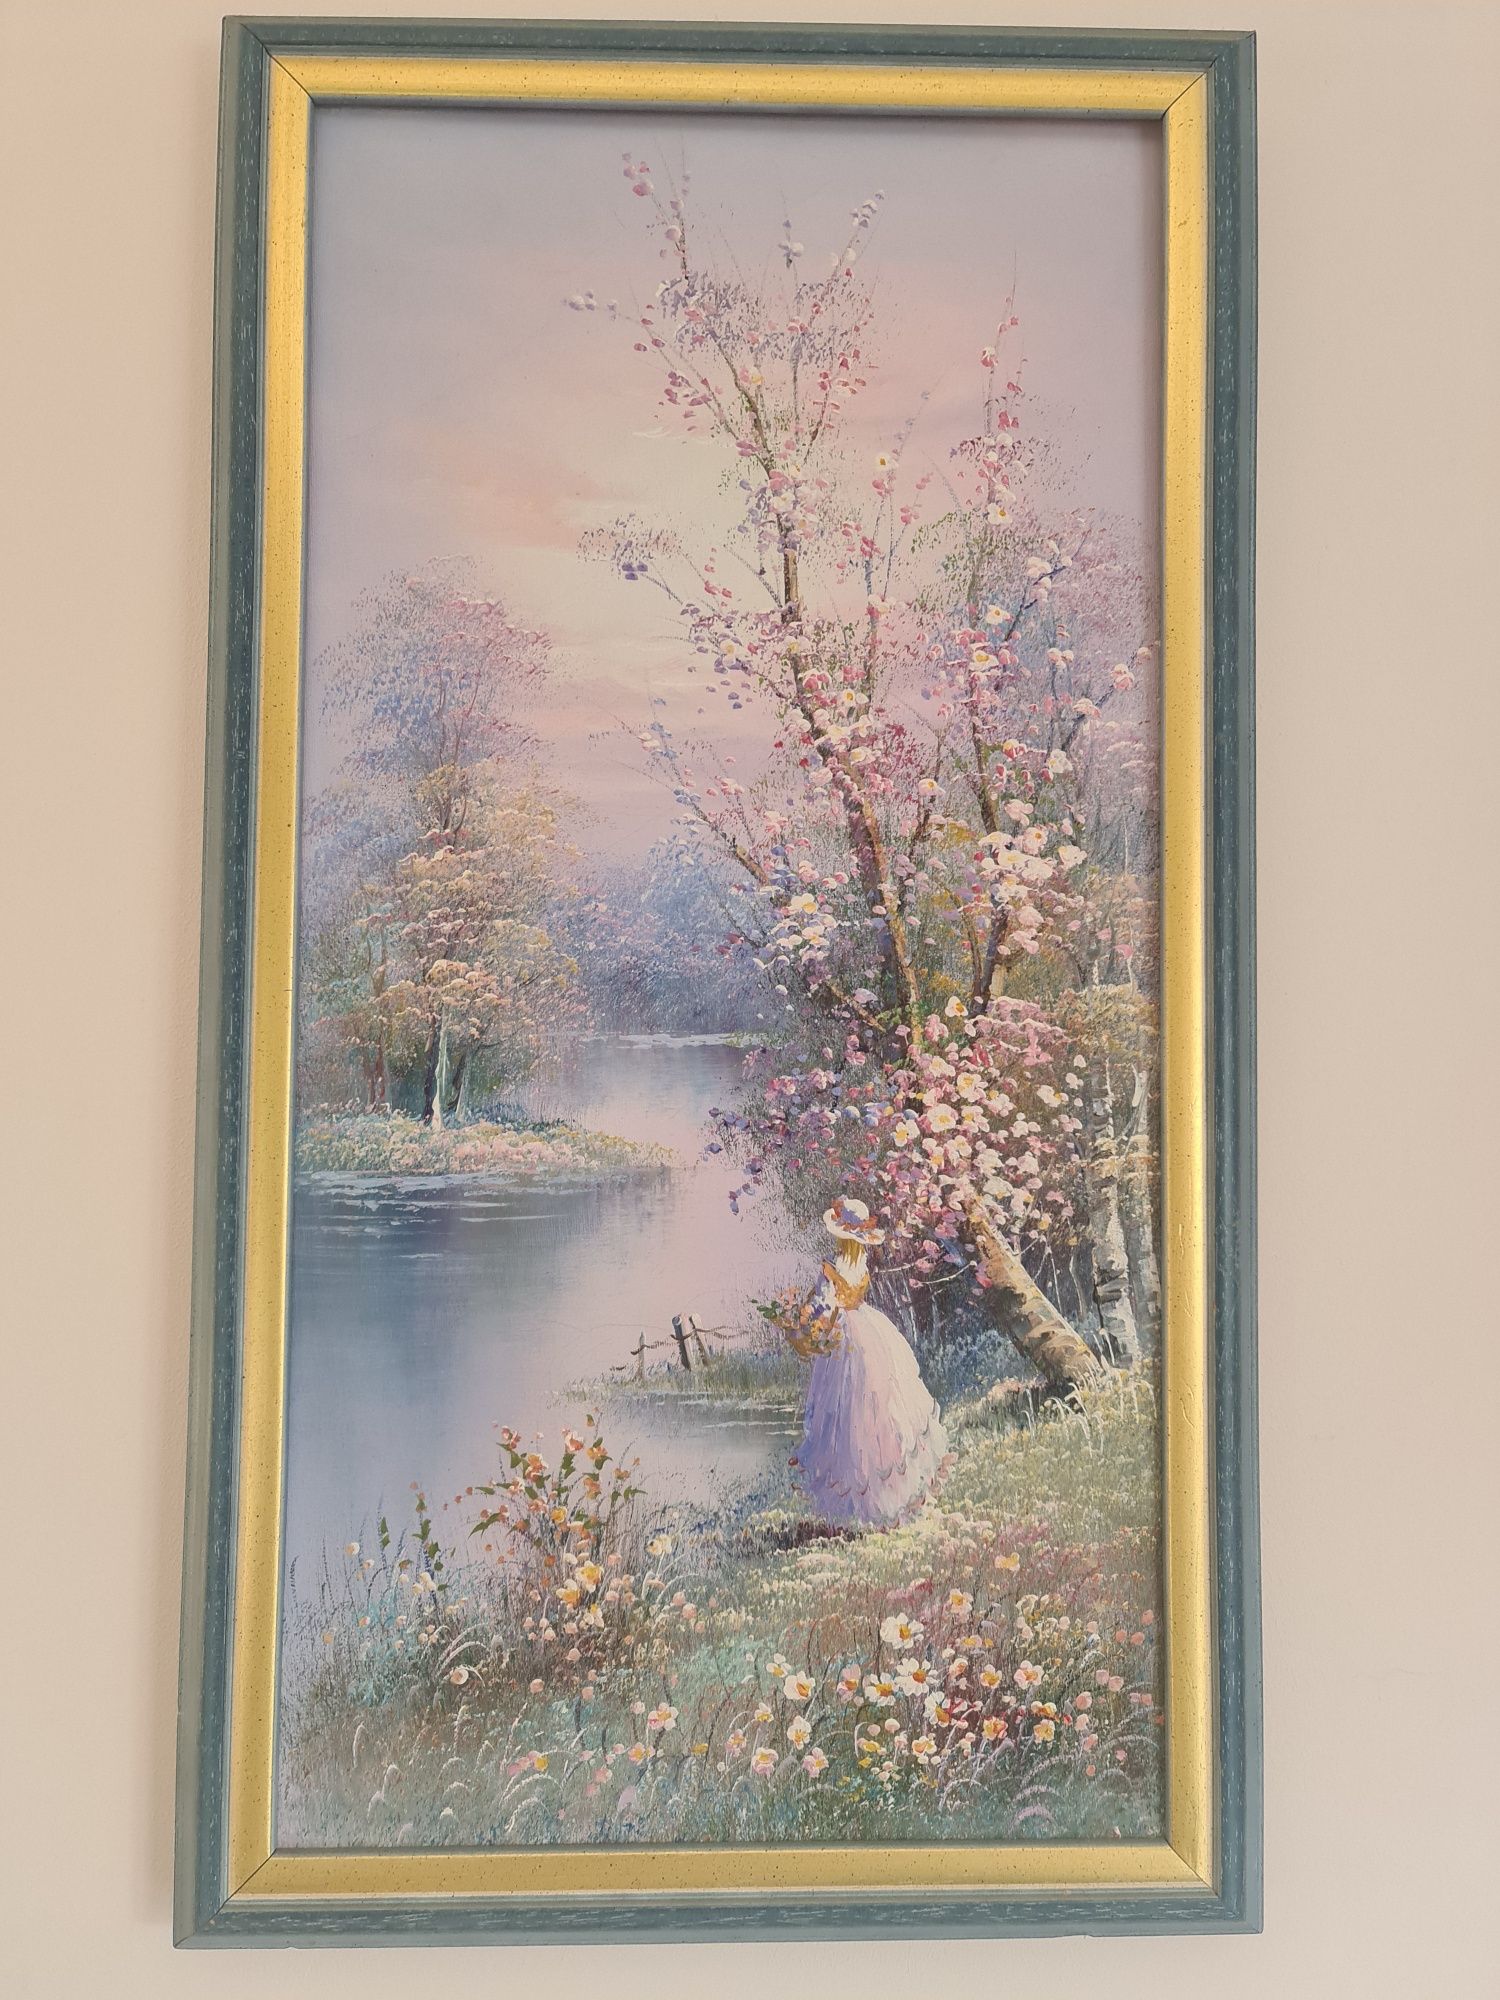 Śliczny obraz Dama nad rzeką w pastelowych kolorach